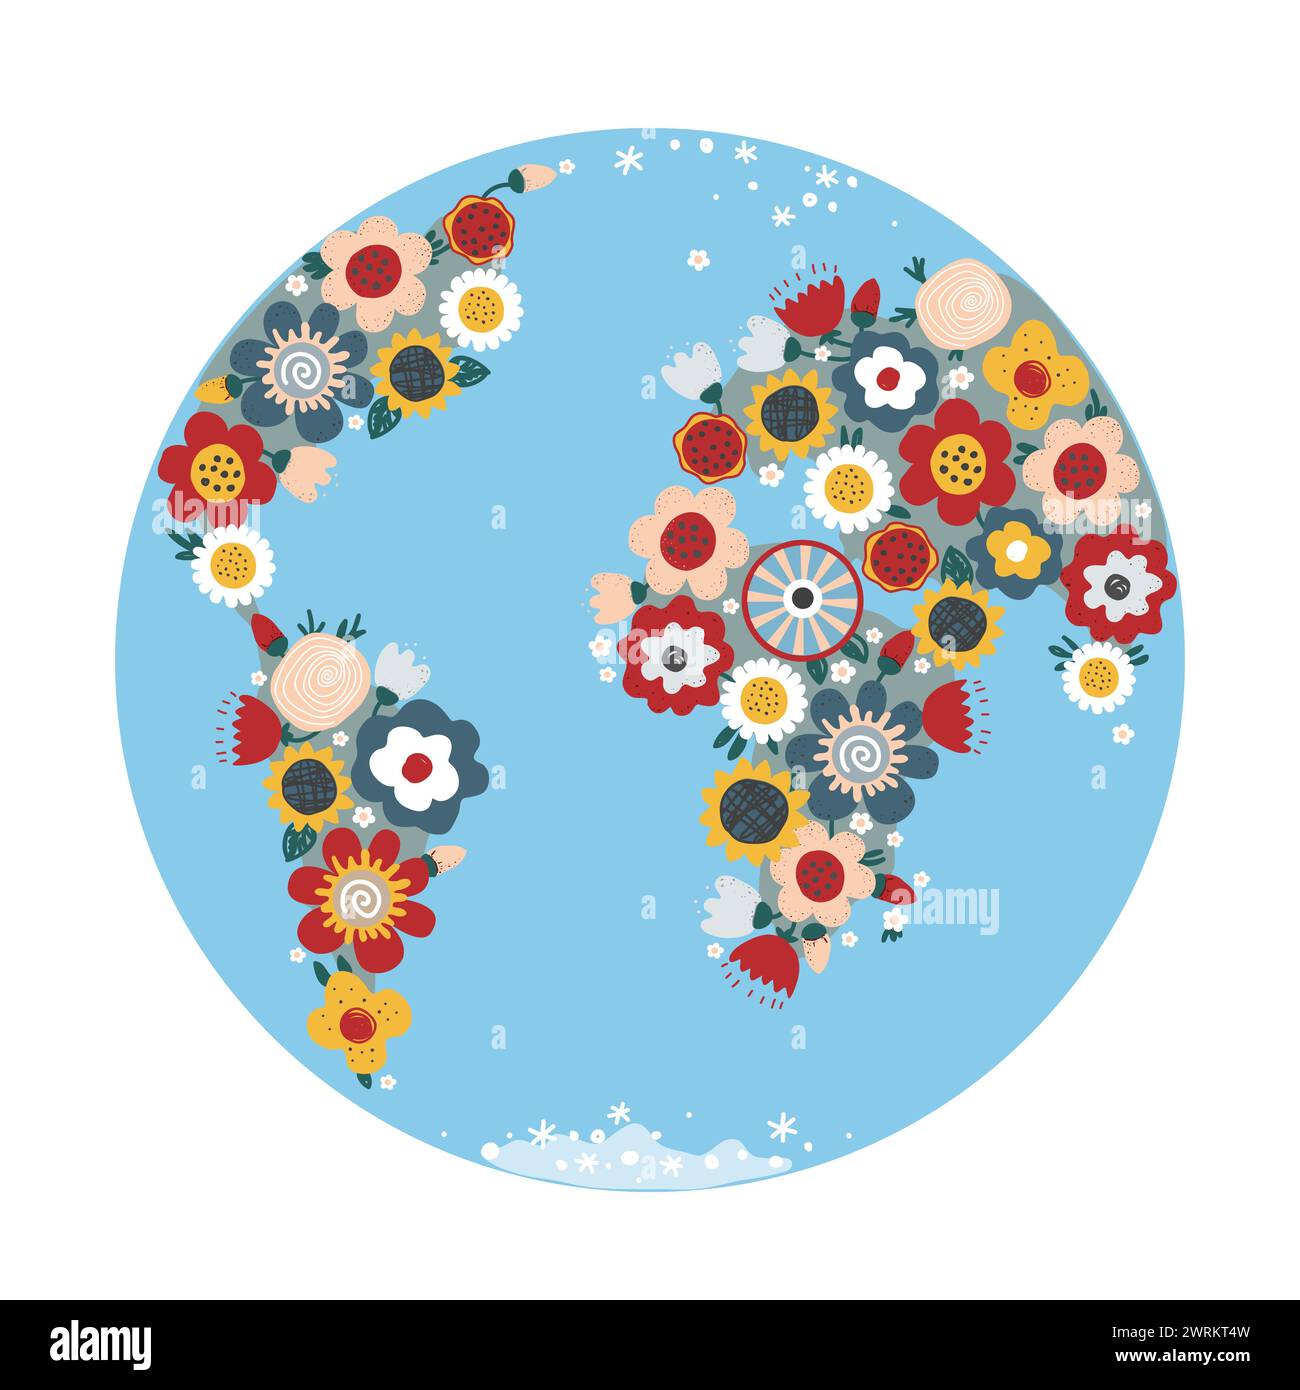 Globe avec des fleurs sur les continents dans le style doodle de dessin animé. Journée mondiale de la Terre. Illustration vectorielle, carte, bannière, affiche ou modèle de placard. 22 avril Illustration de Vecteur